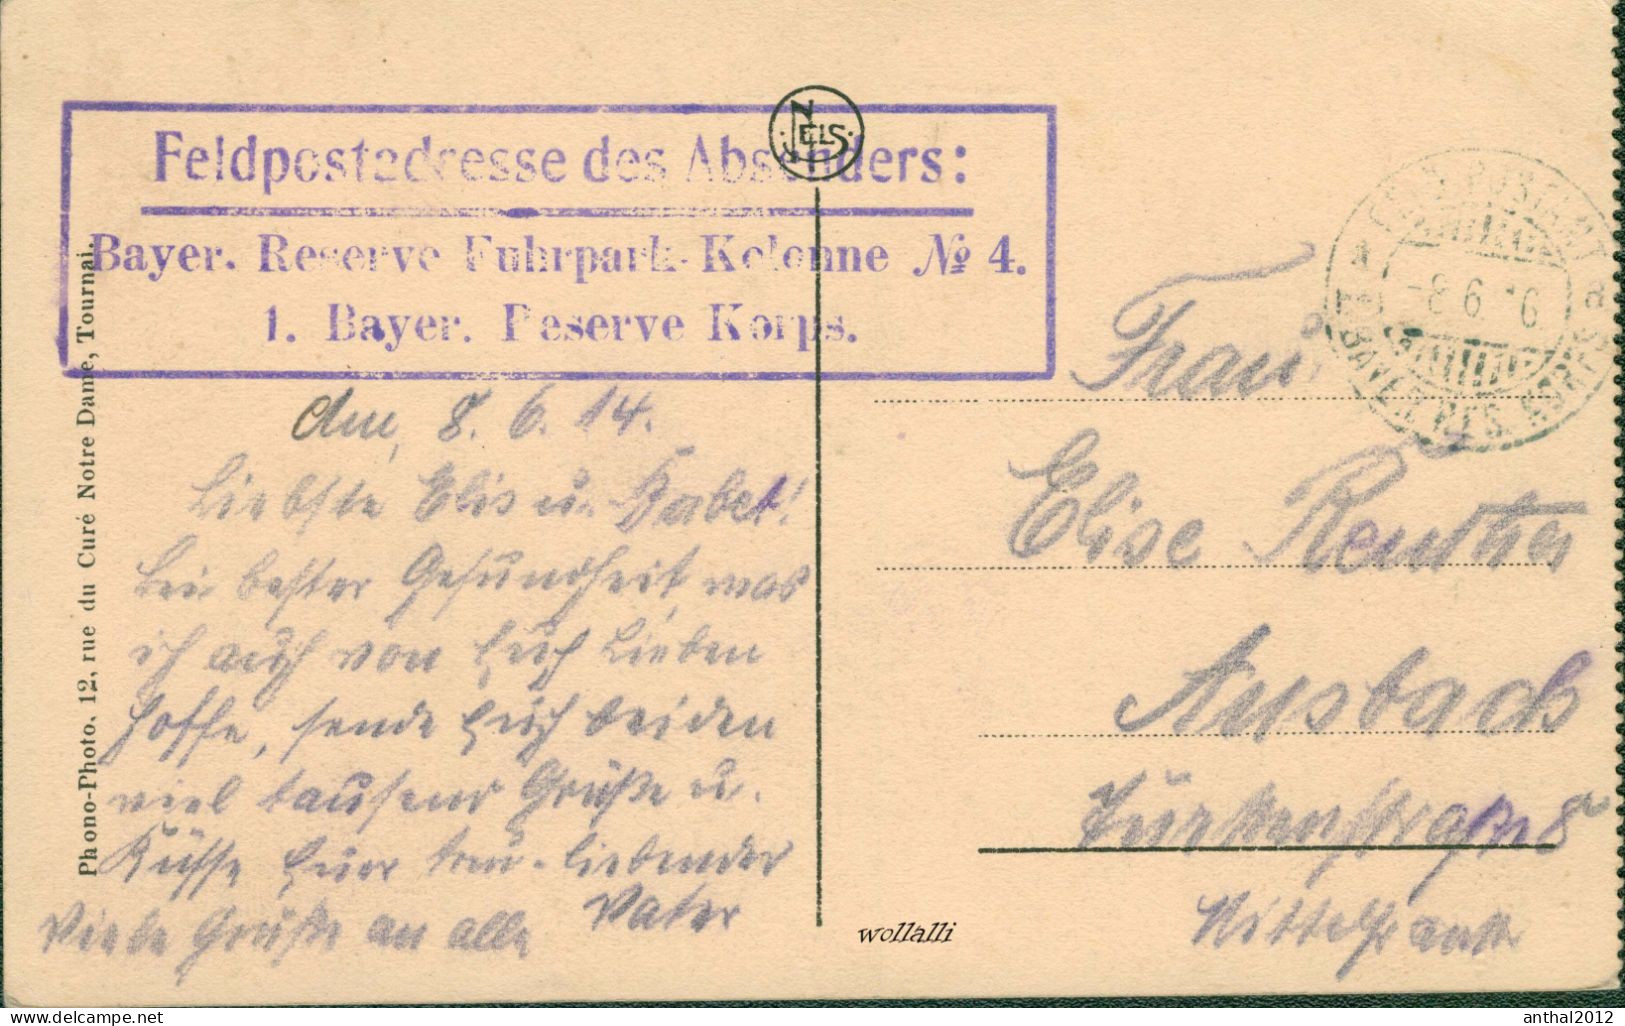 Superrar Maubeuge (59) La Mairie Soldaten Uniform Kinder Vor Dem Rathaus 8.6.1914 Feldpost - Maubeuge